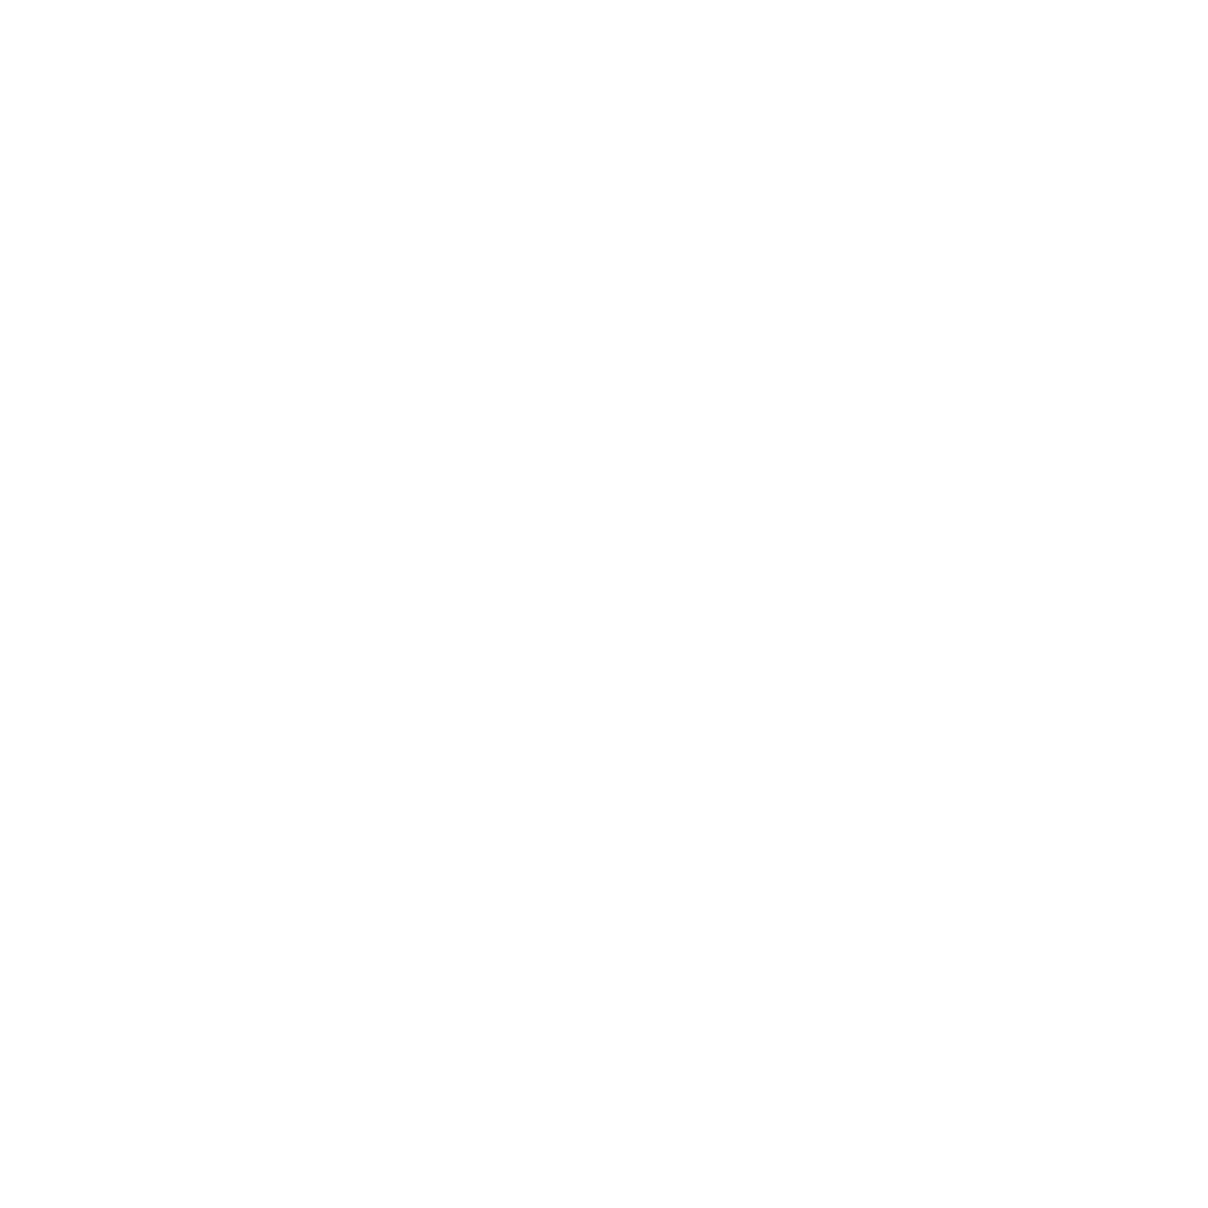 Clark & Lewie’s